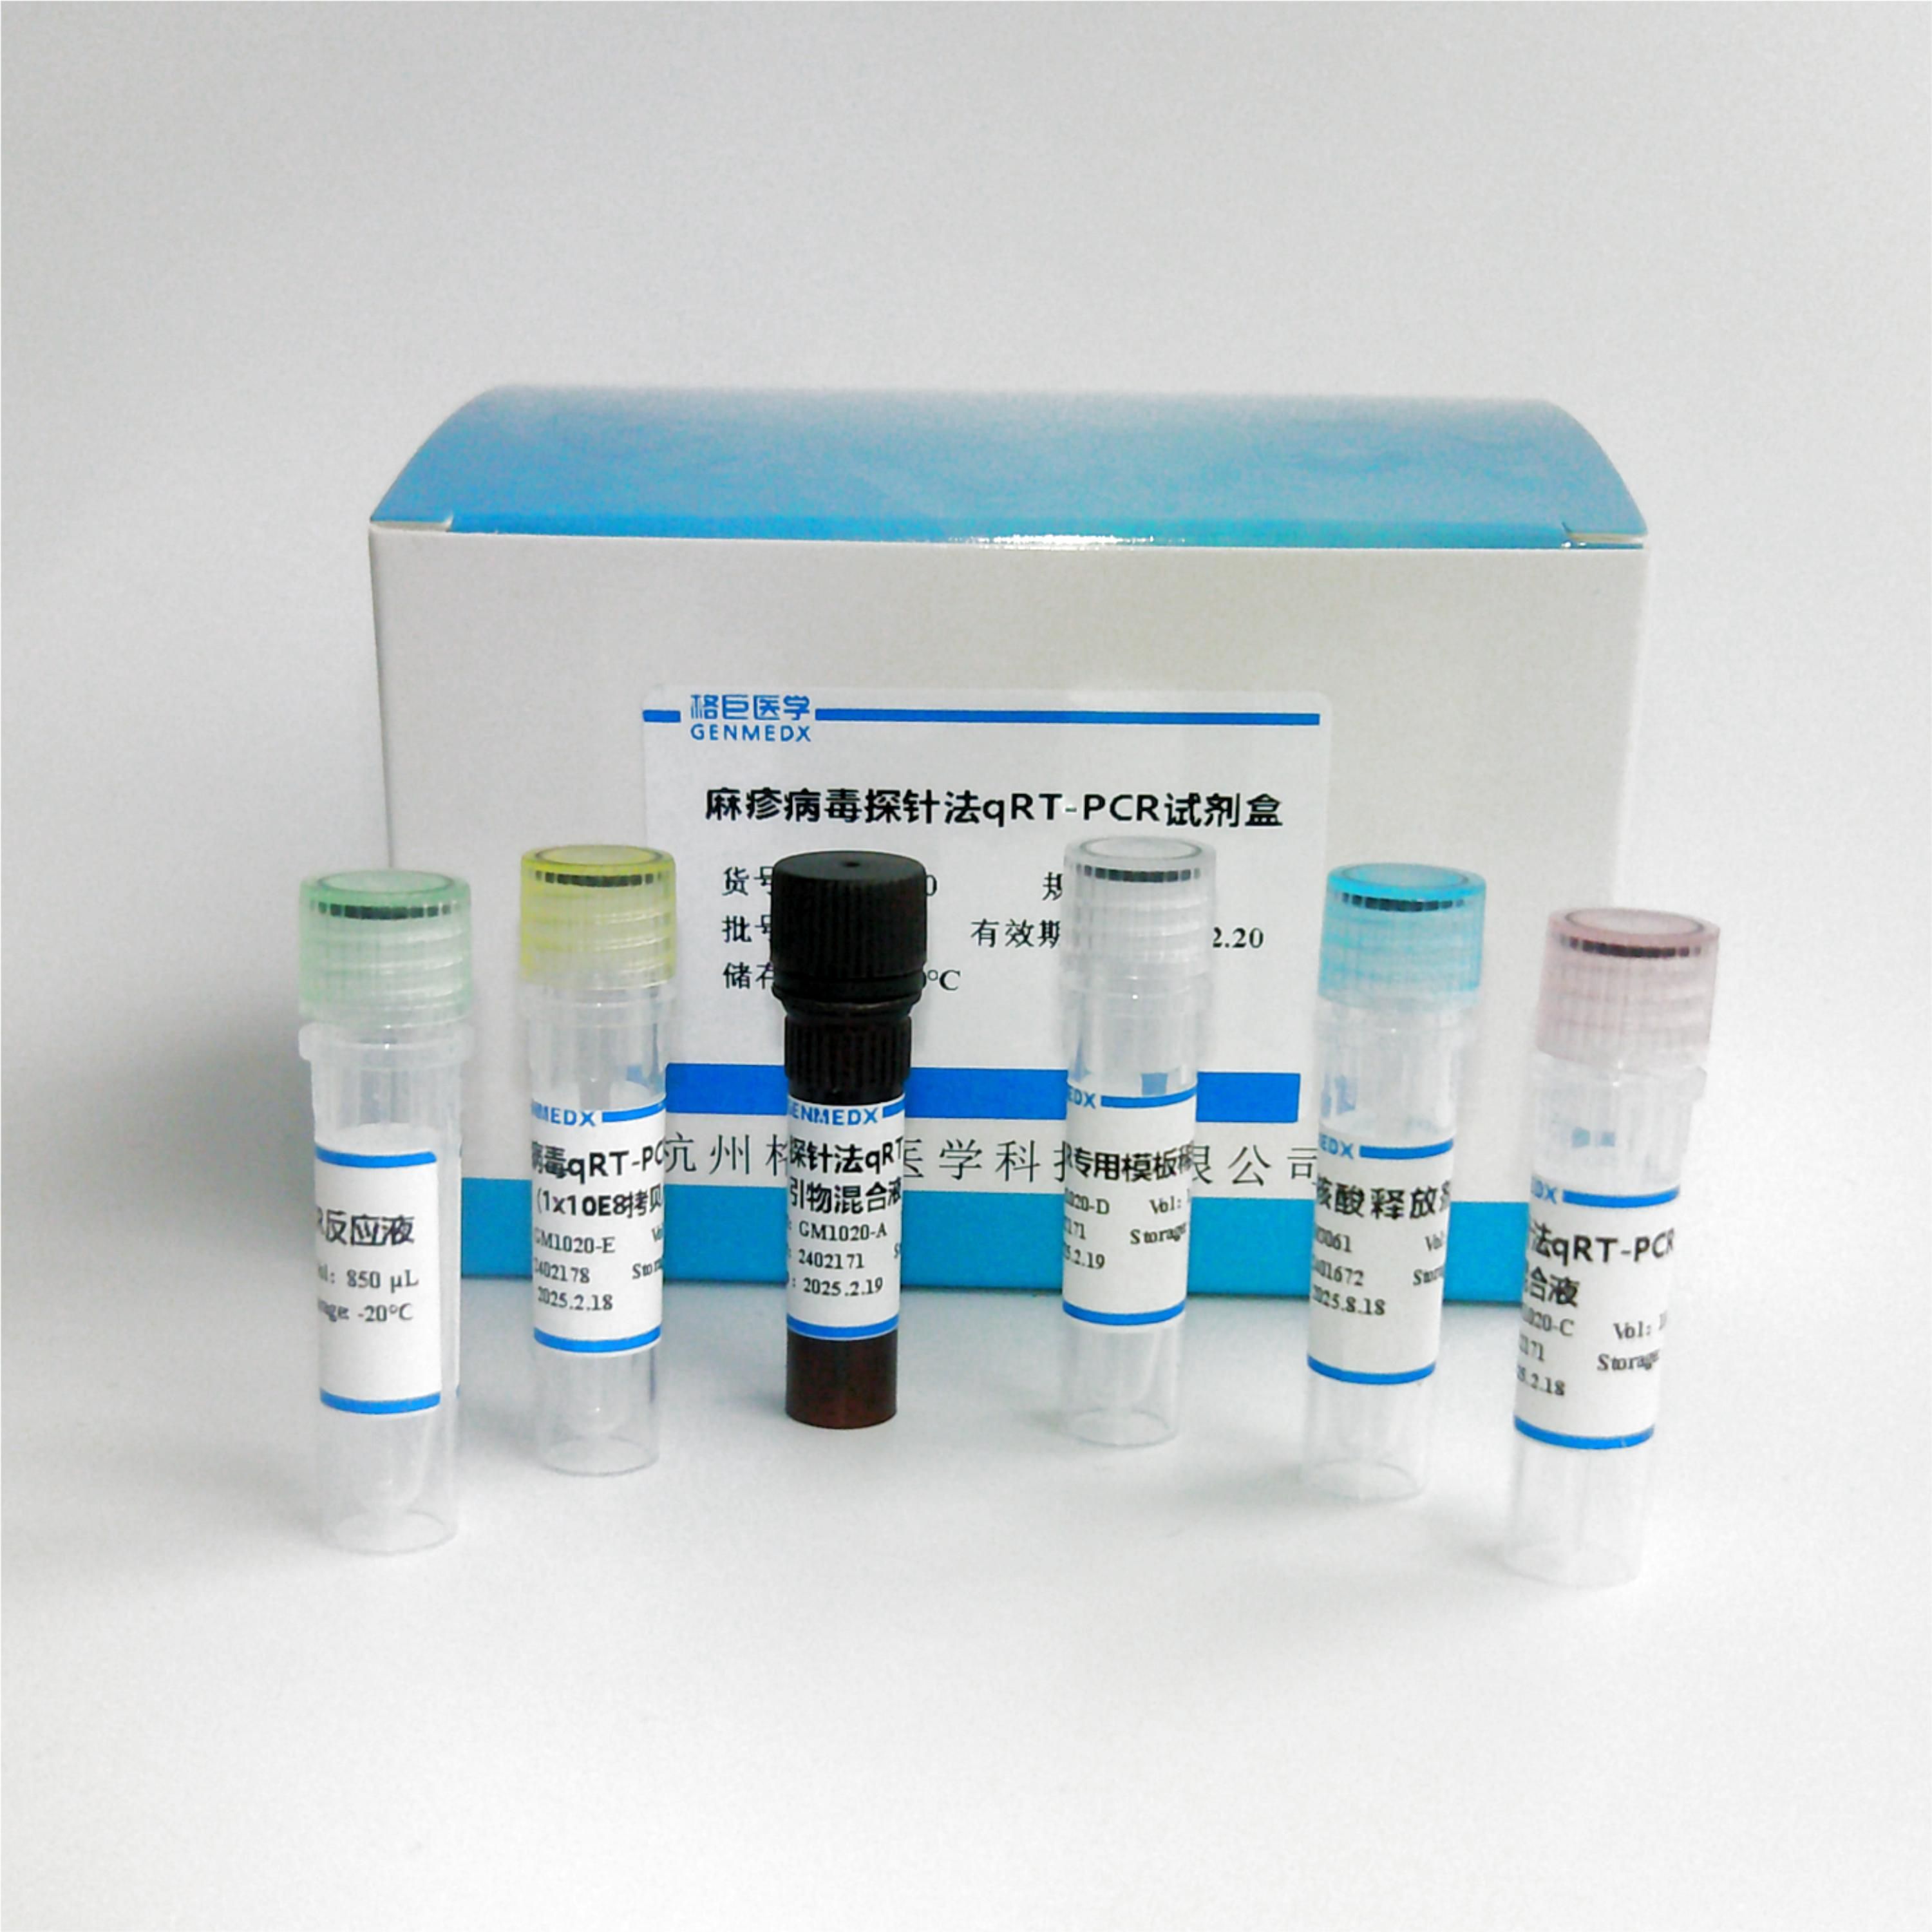 柯萨奇病毒B3染料法荧光定量RT-PCR试剂盒